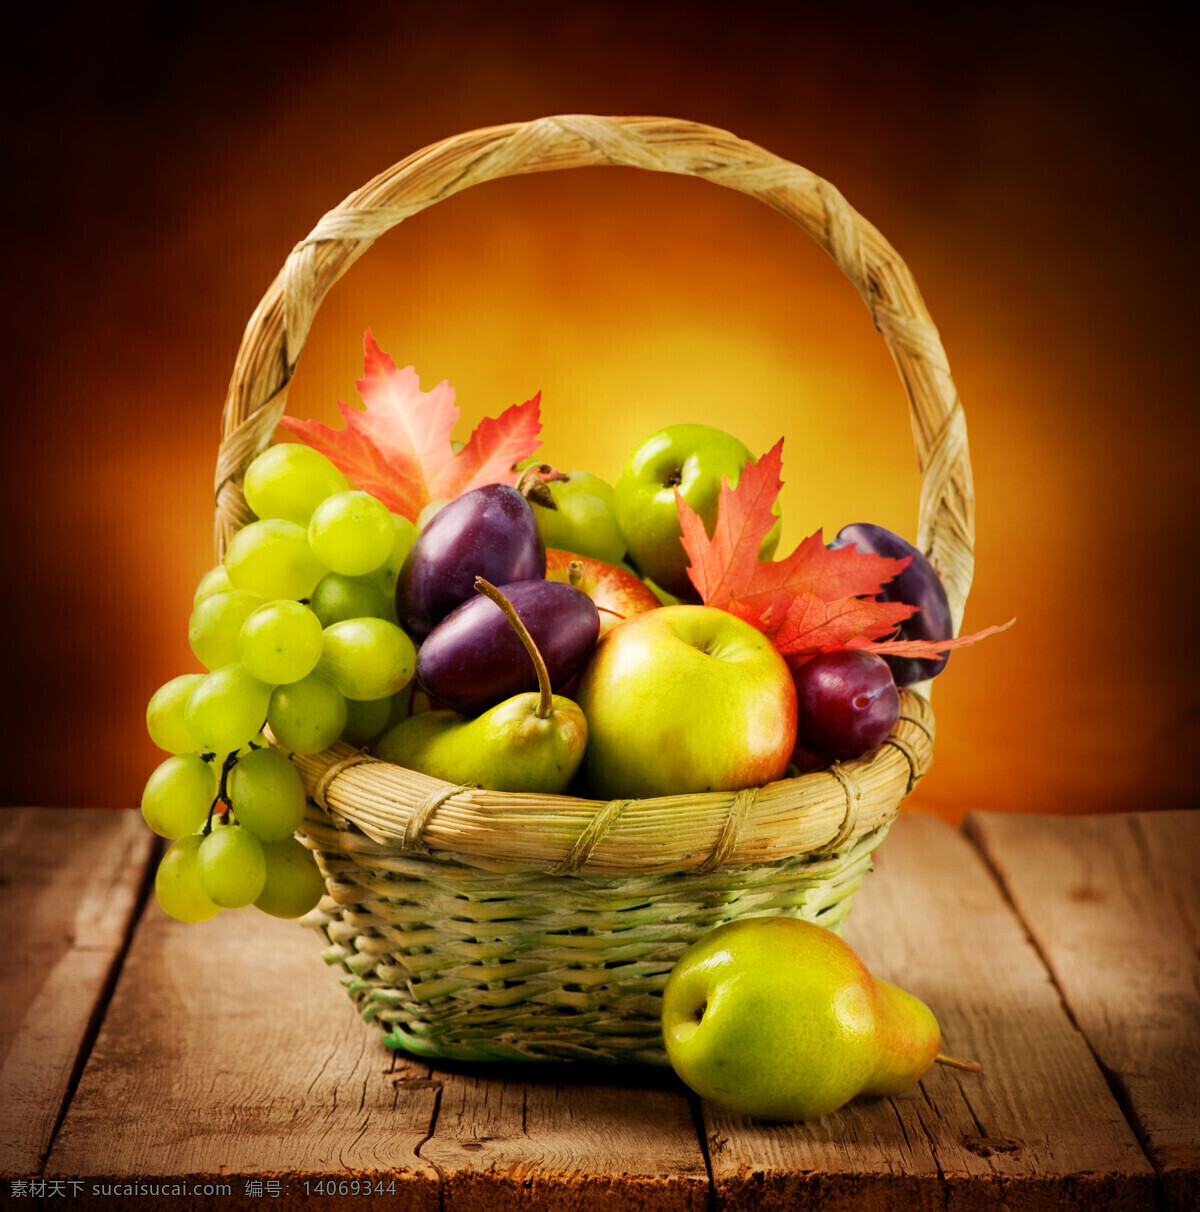 水果篮子 水果 篮子 竹篮 葡萄 梨 苹果 枫叶 水果图片 餐饮美食